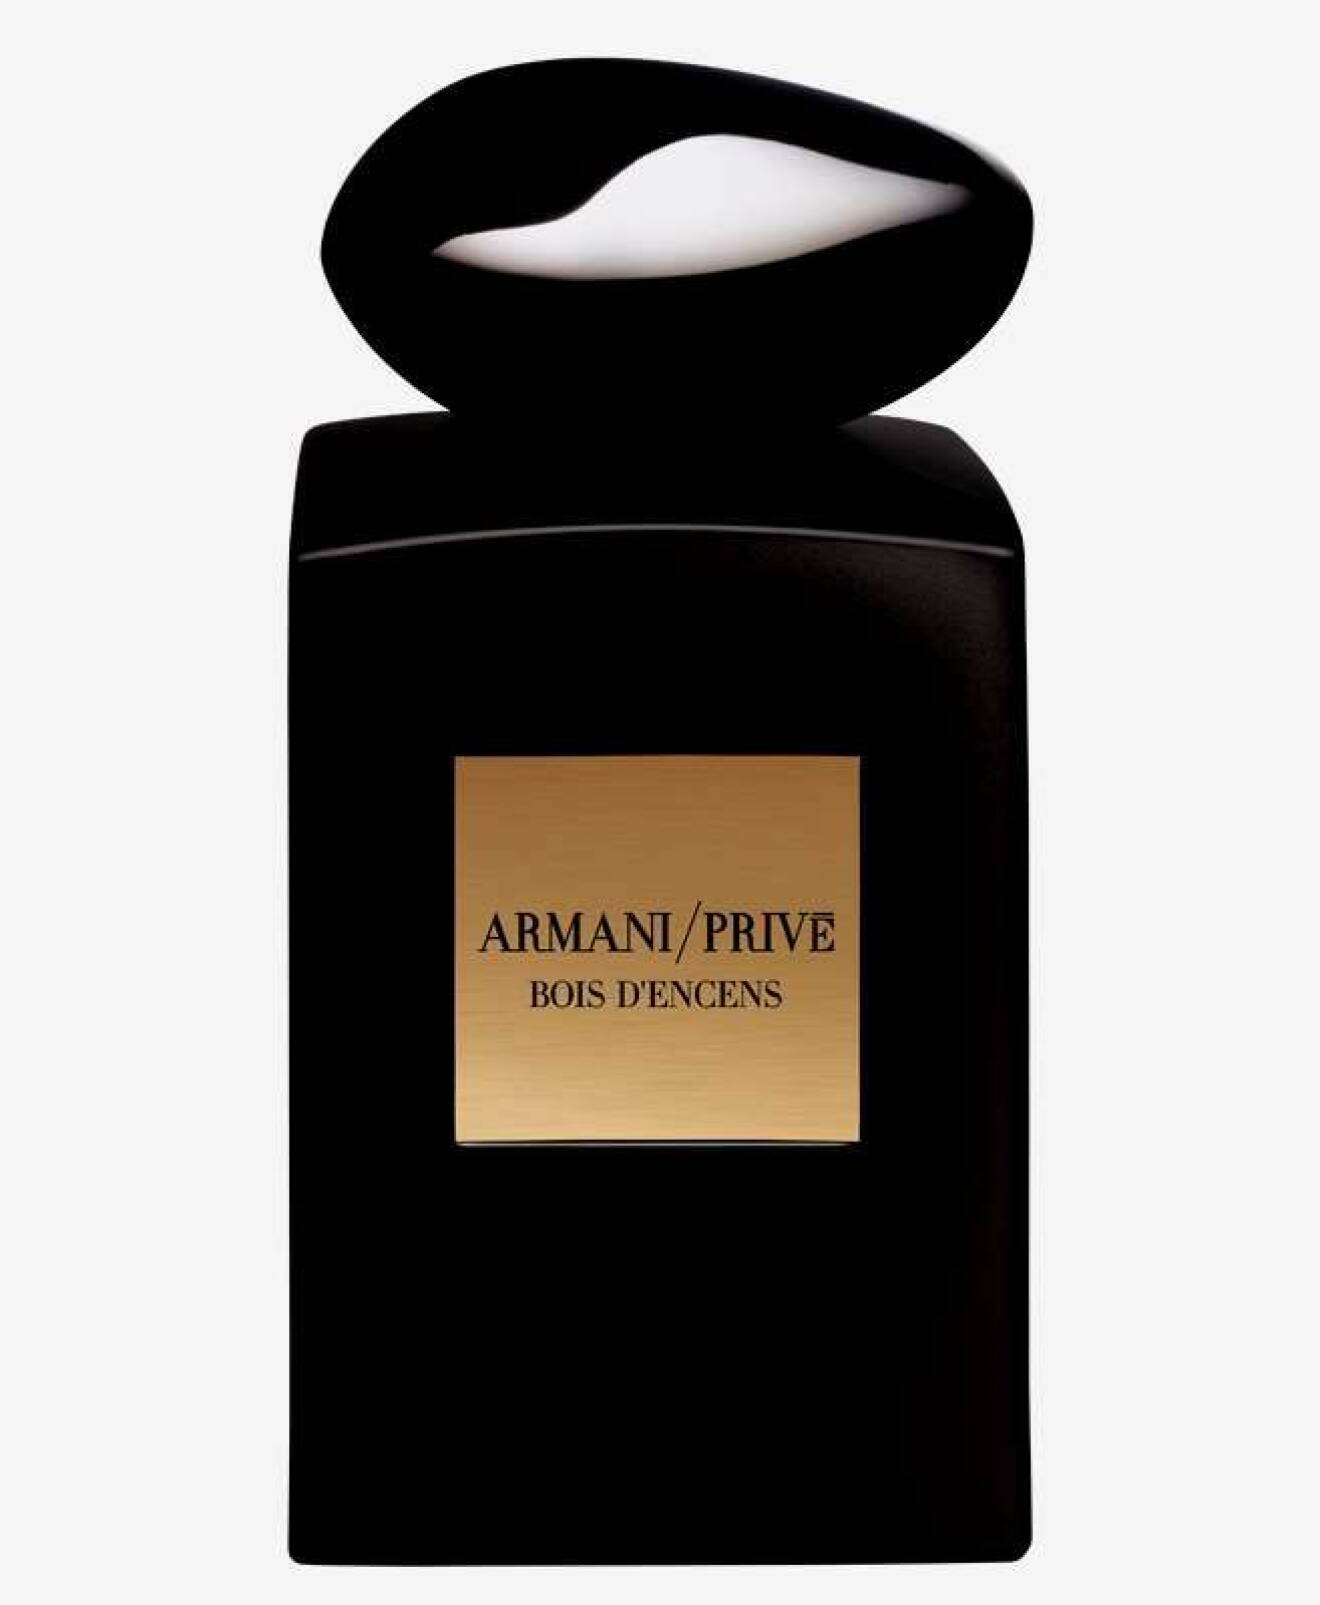 Giorgio Armani Privé parfym Bois d'encens